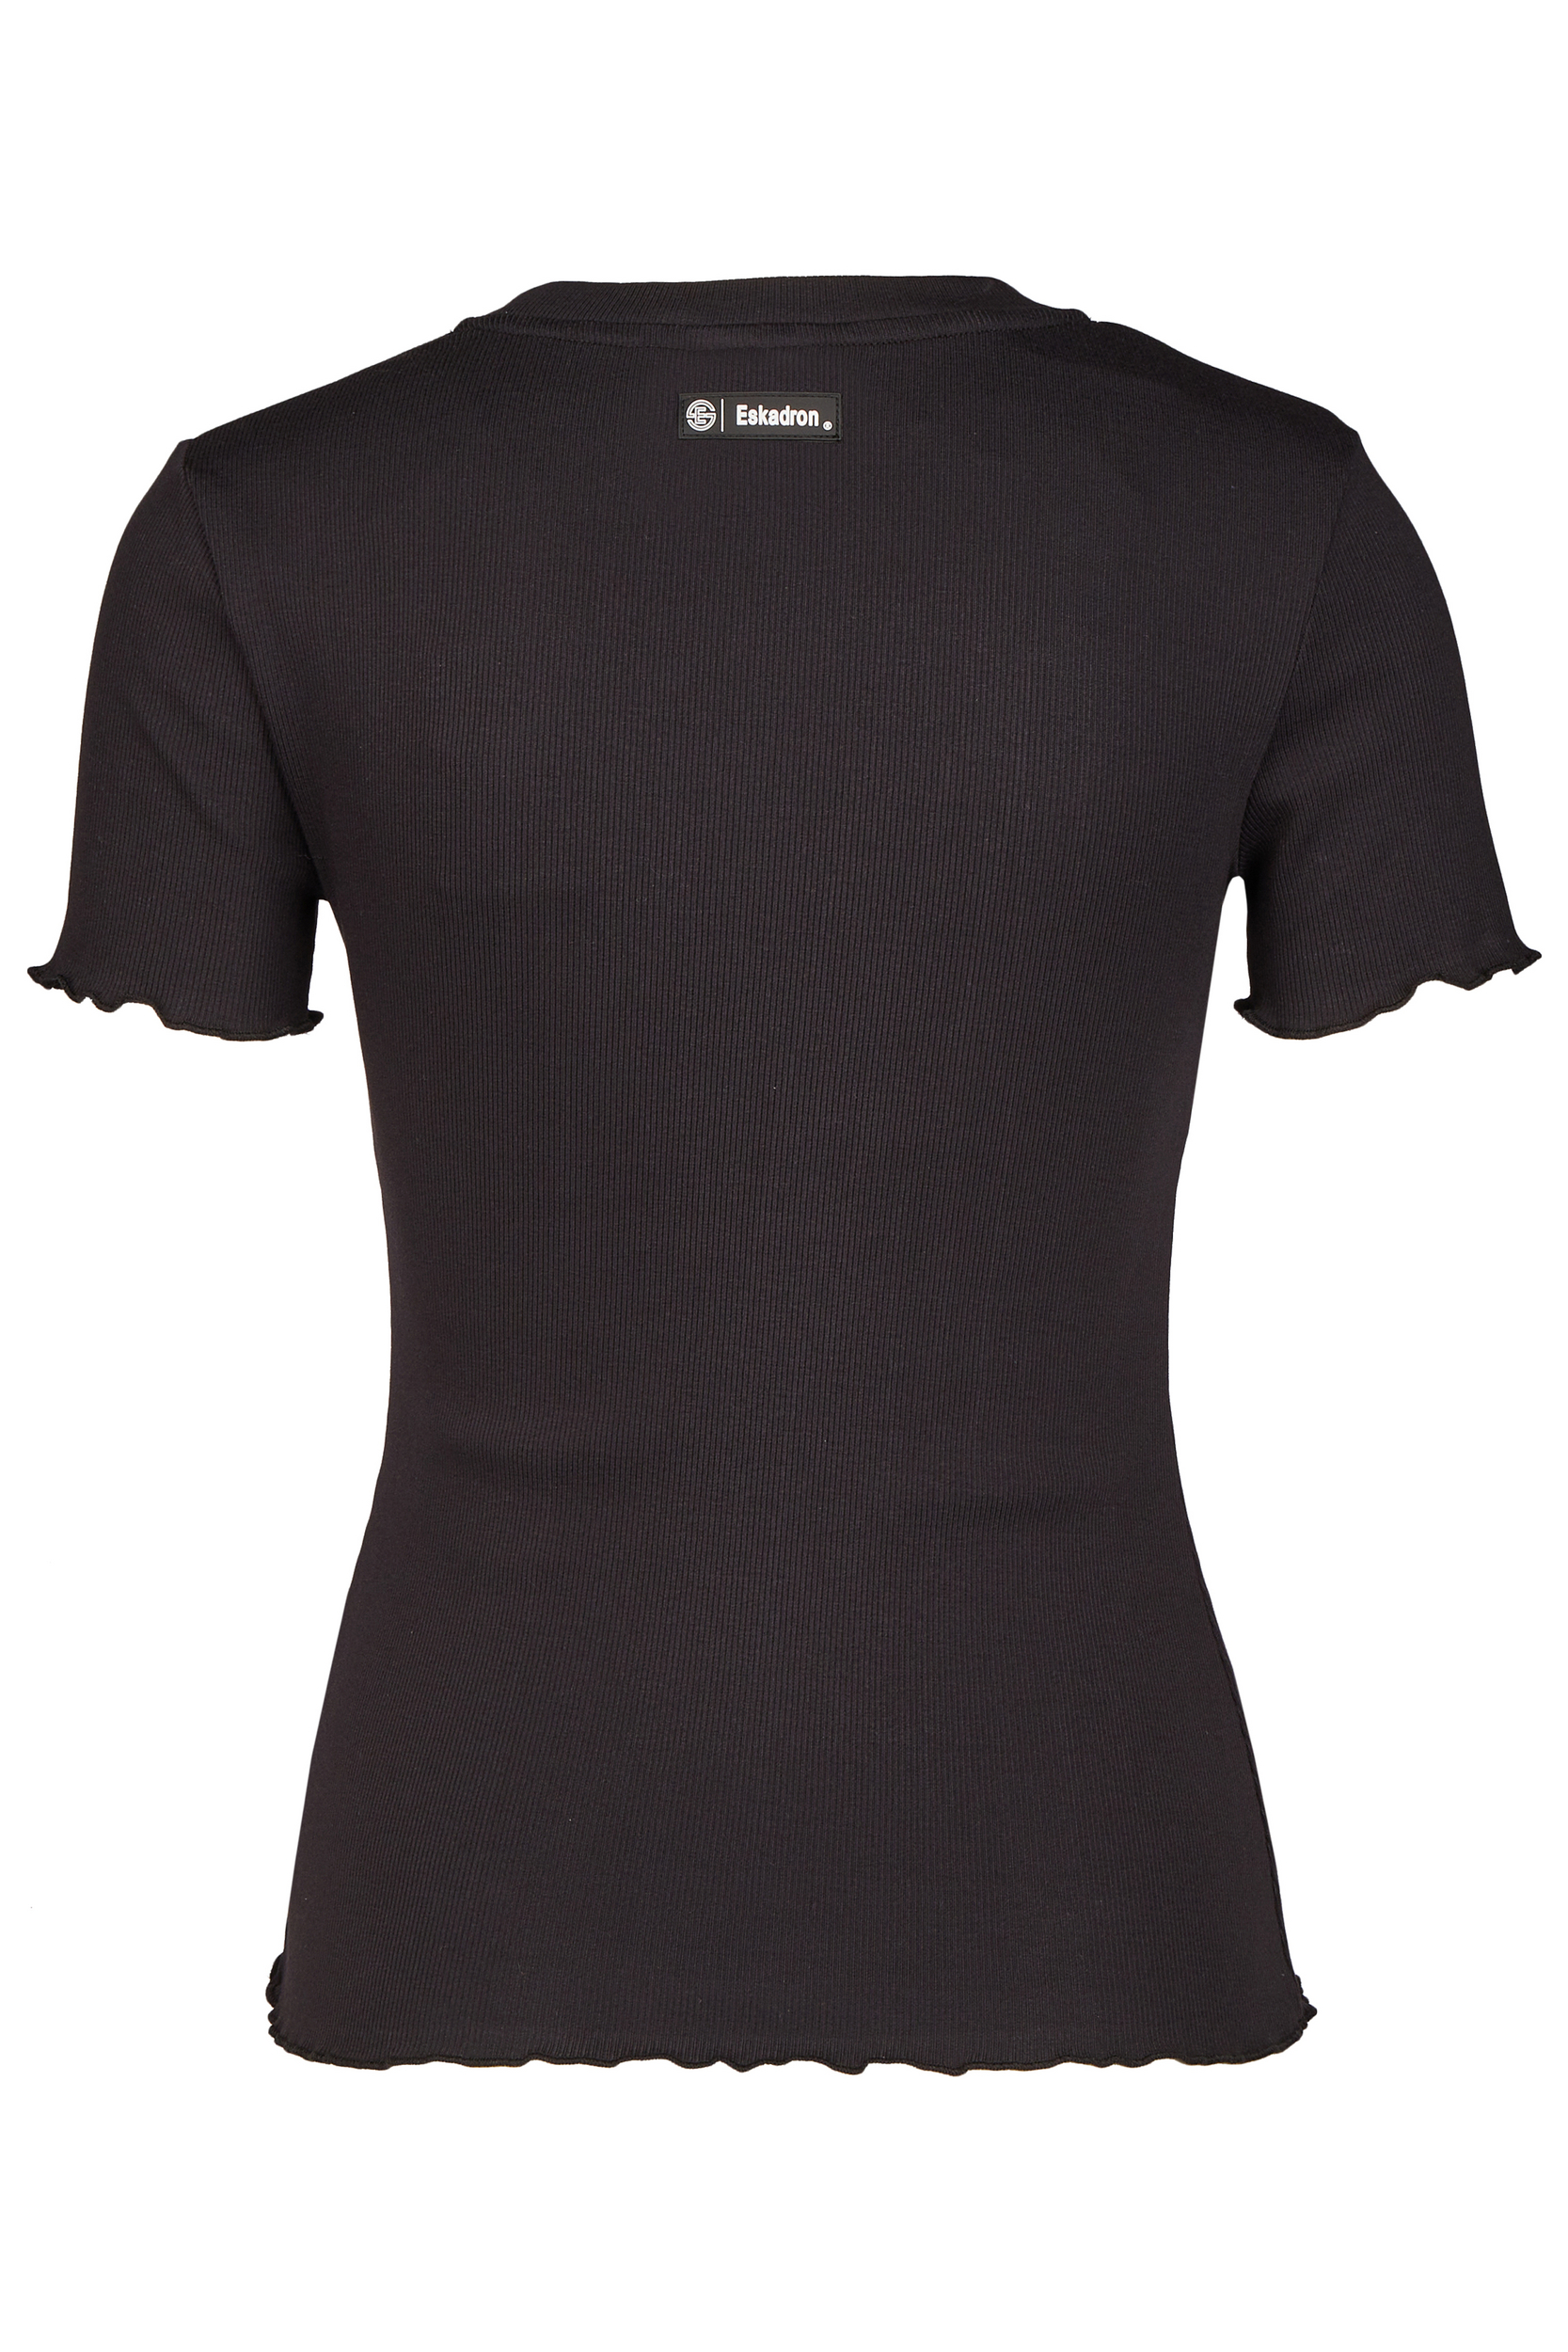 ESKADRON T-Shirt Damen Rib Dynamic 24 - black - XXS - 7